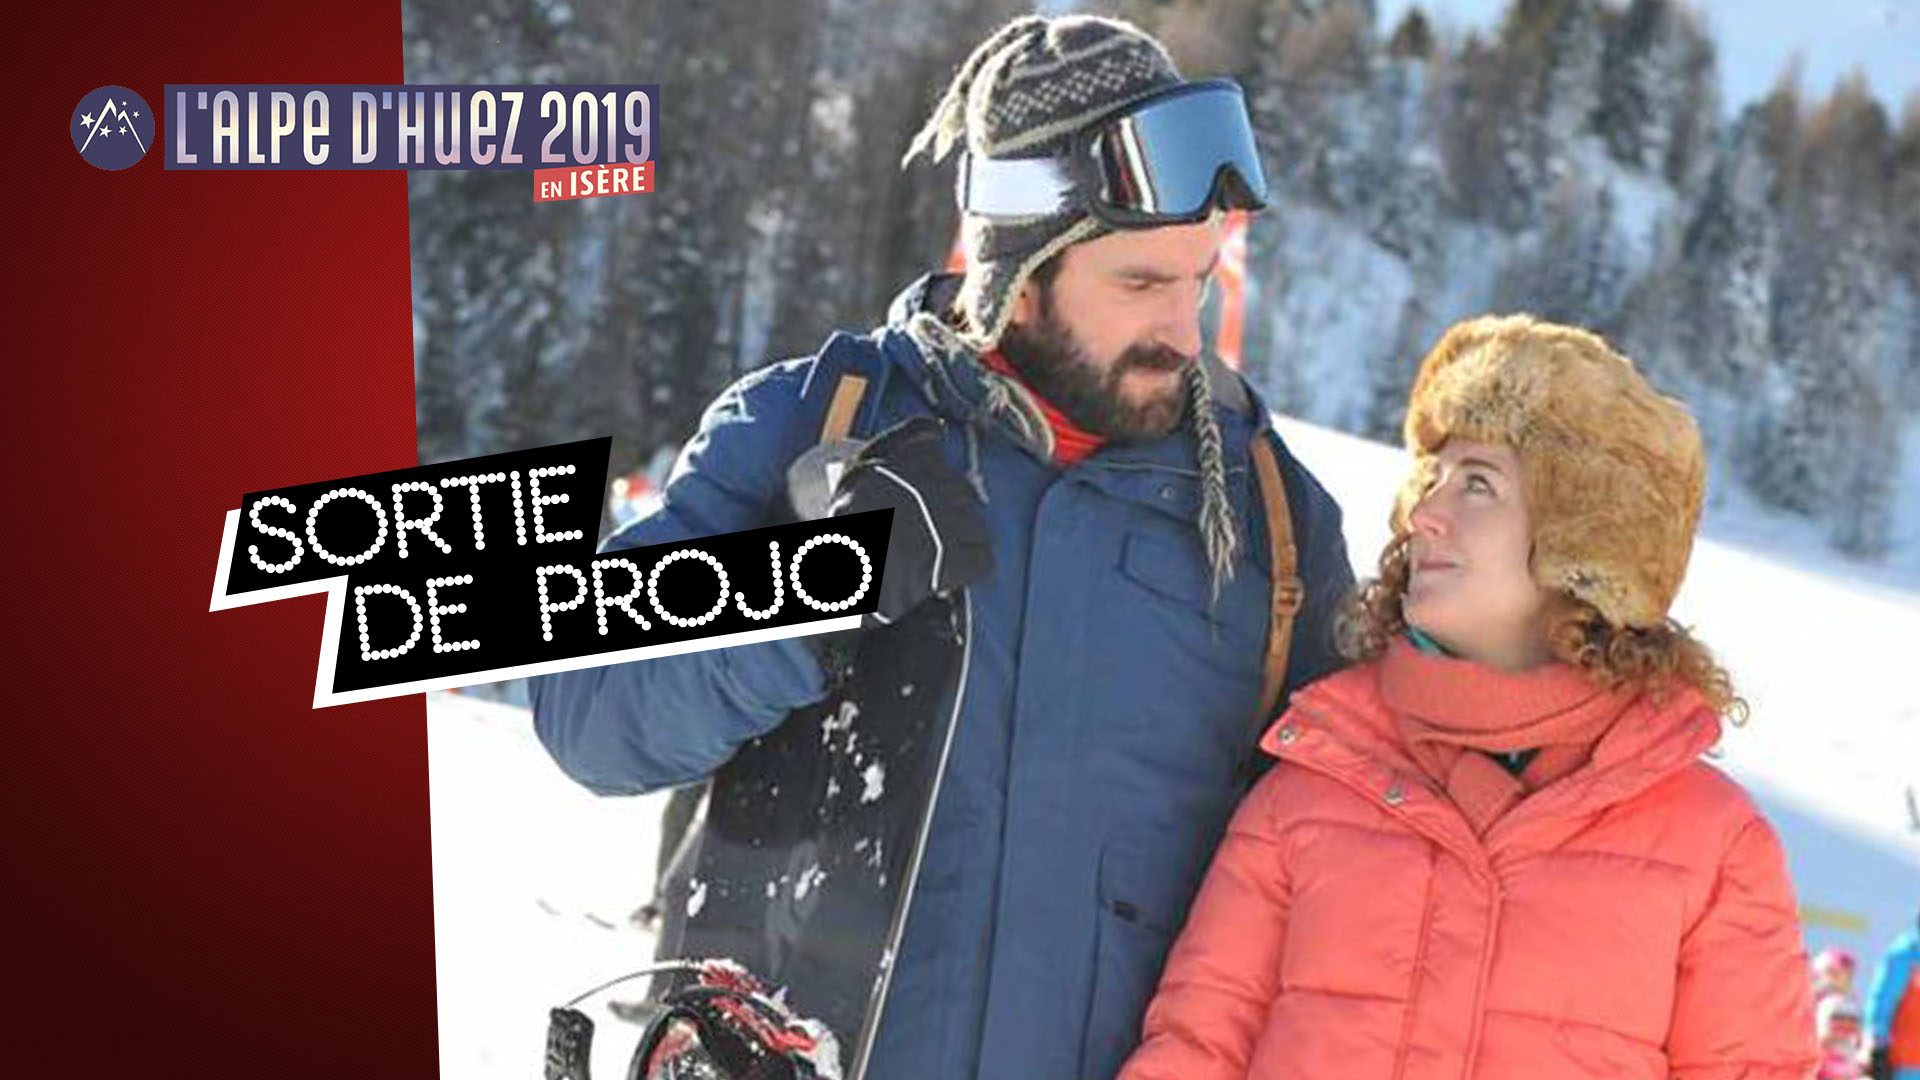 Festival de l'Alpe d'Huez 2019 : nos impressions sur Les Petits Flocons